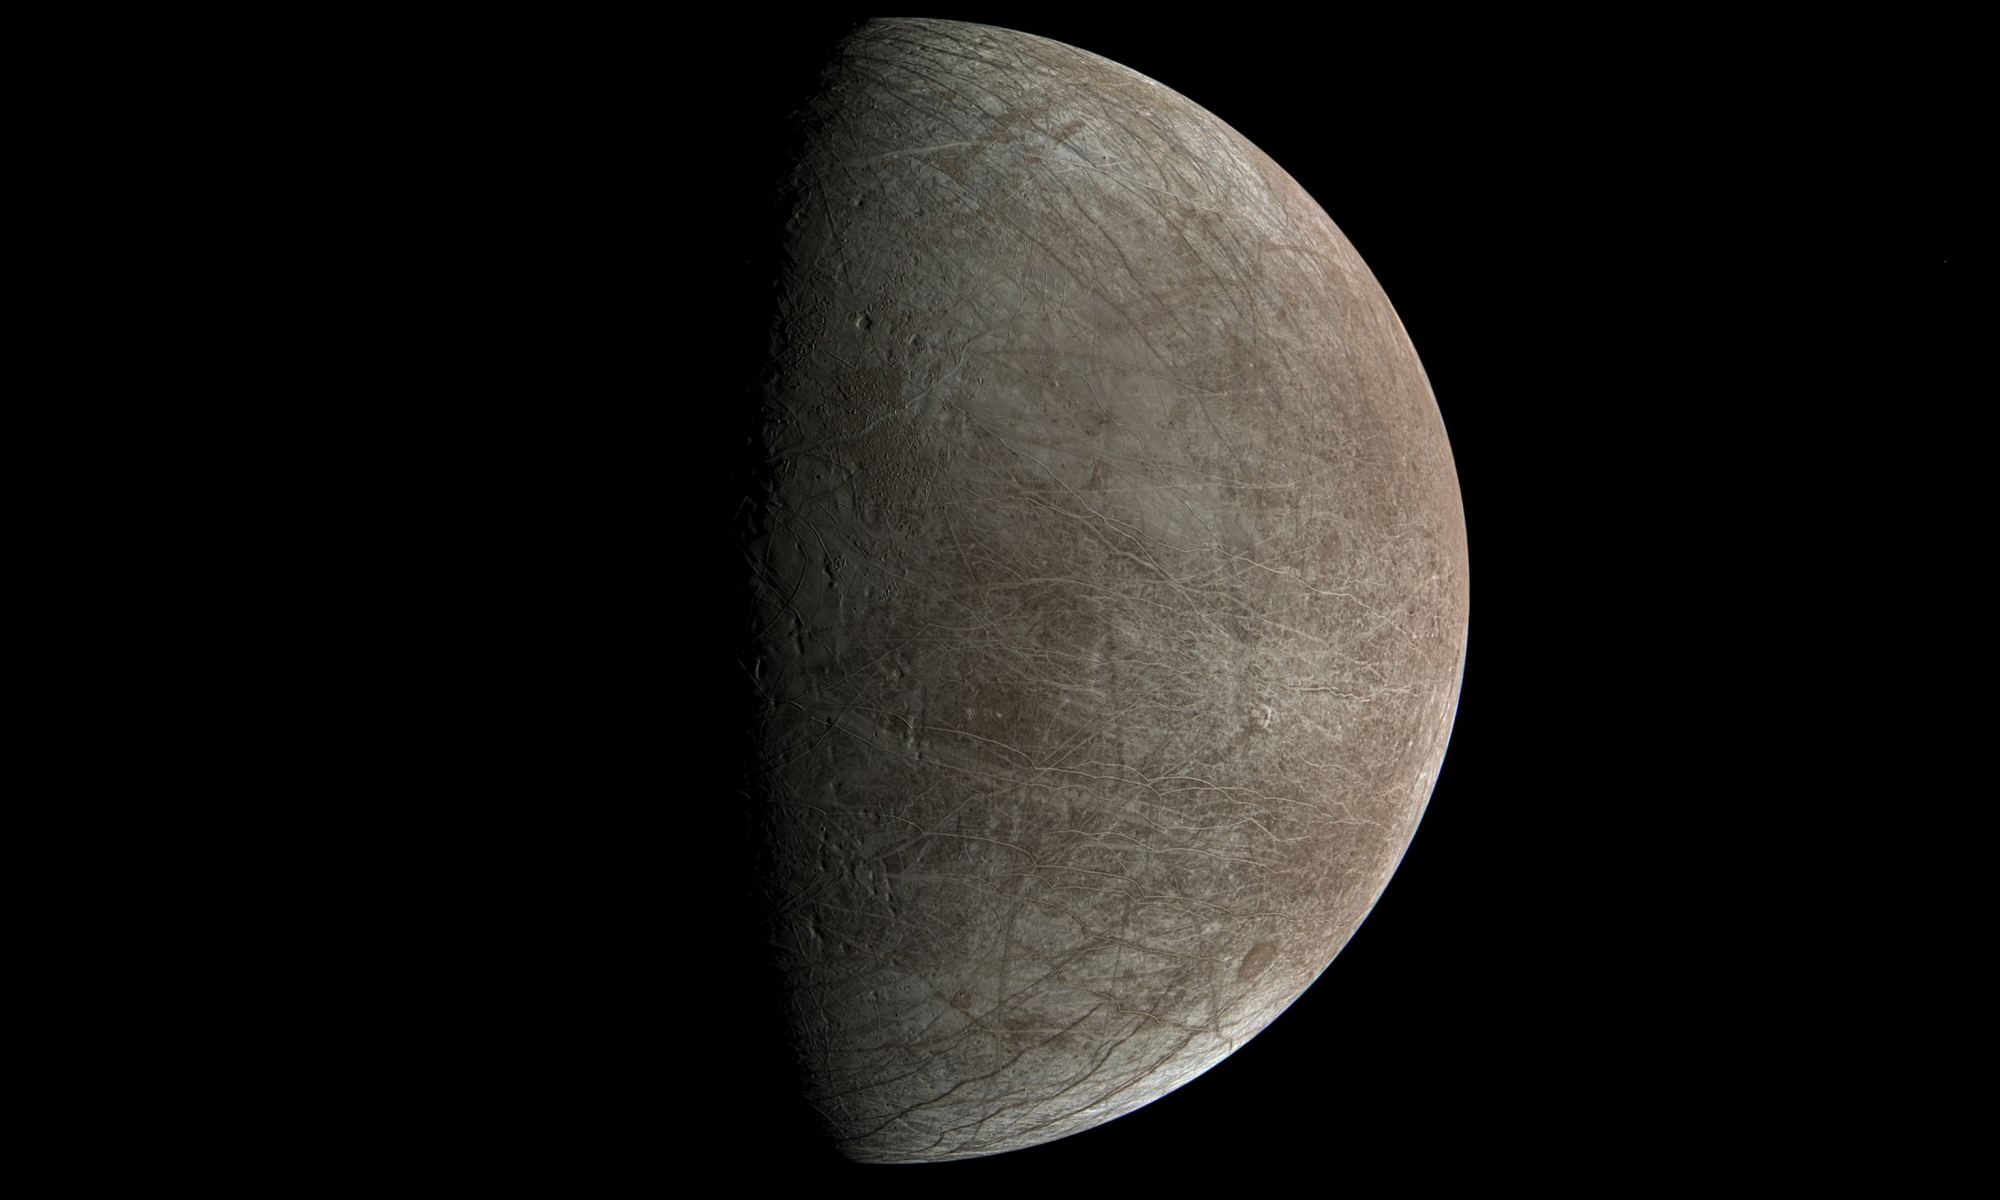 הירח אירופה, כפי שצולם על ידי הגשושית ג'ונו בשנה שעברה. קרדיט: NASA / JPL-Caltech / SwRI / MSSS